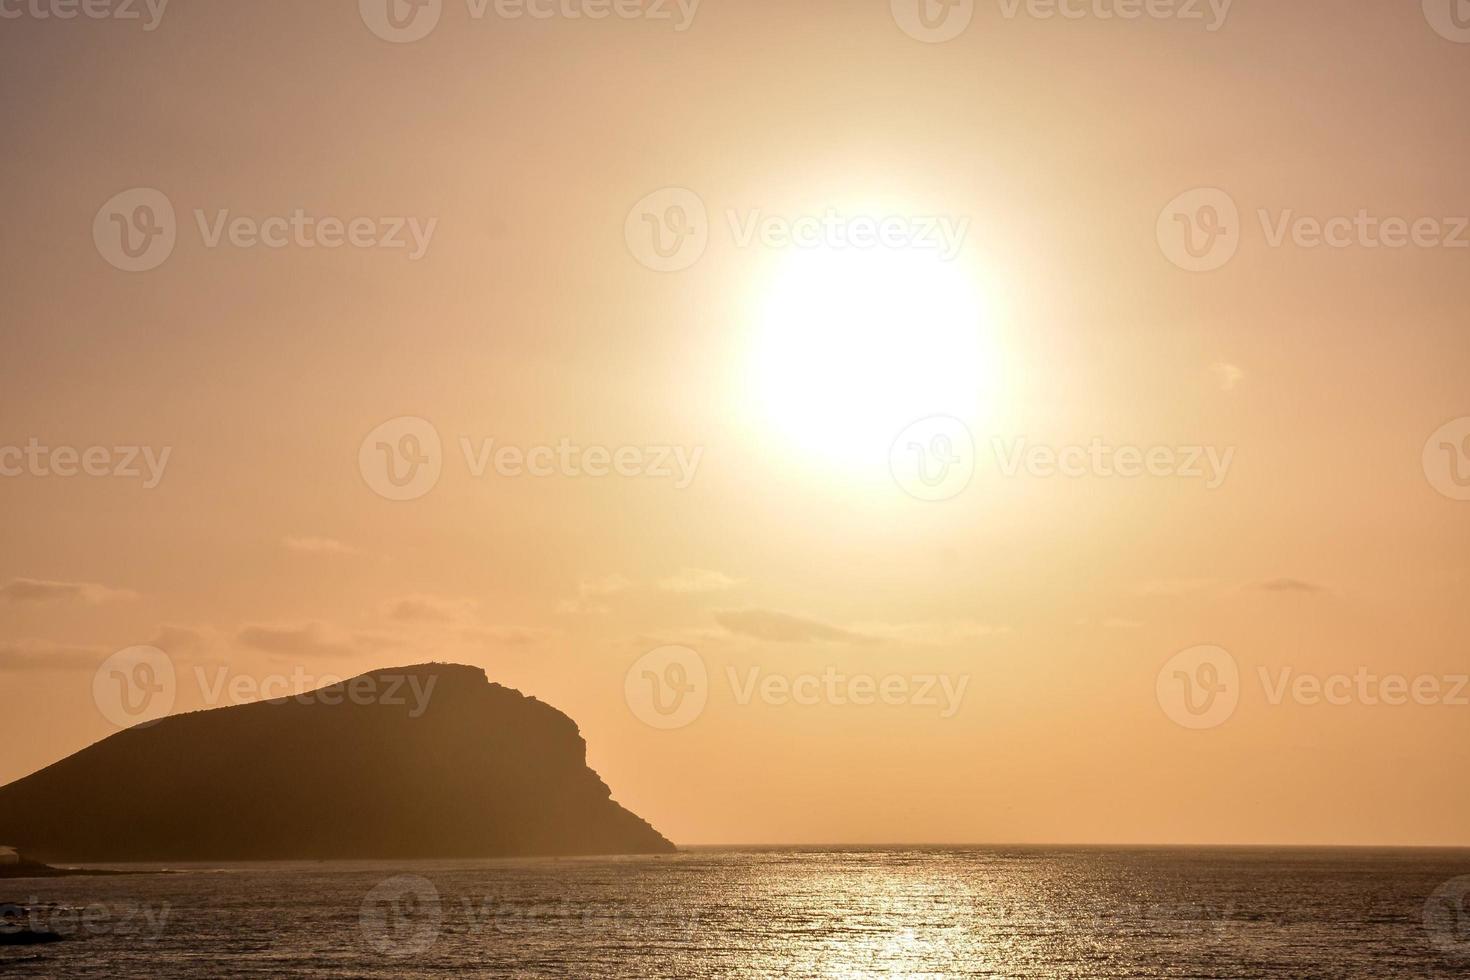 zonsondergang over de zee foto